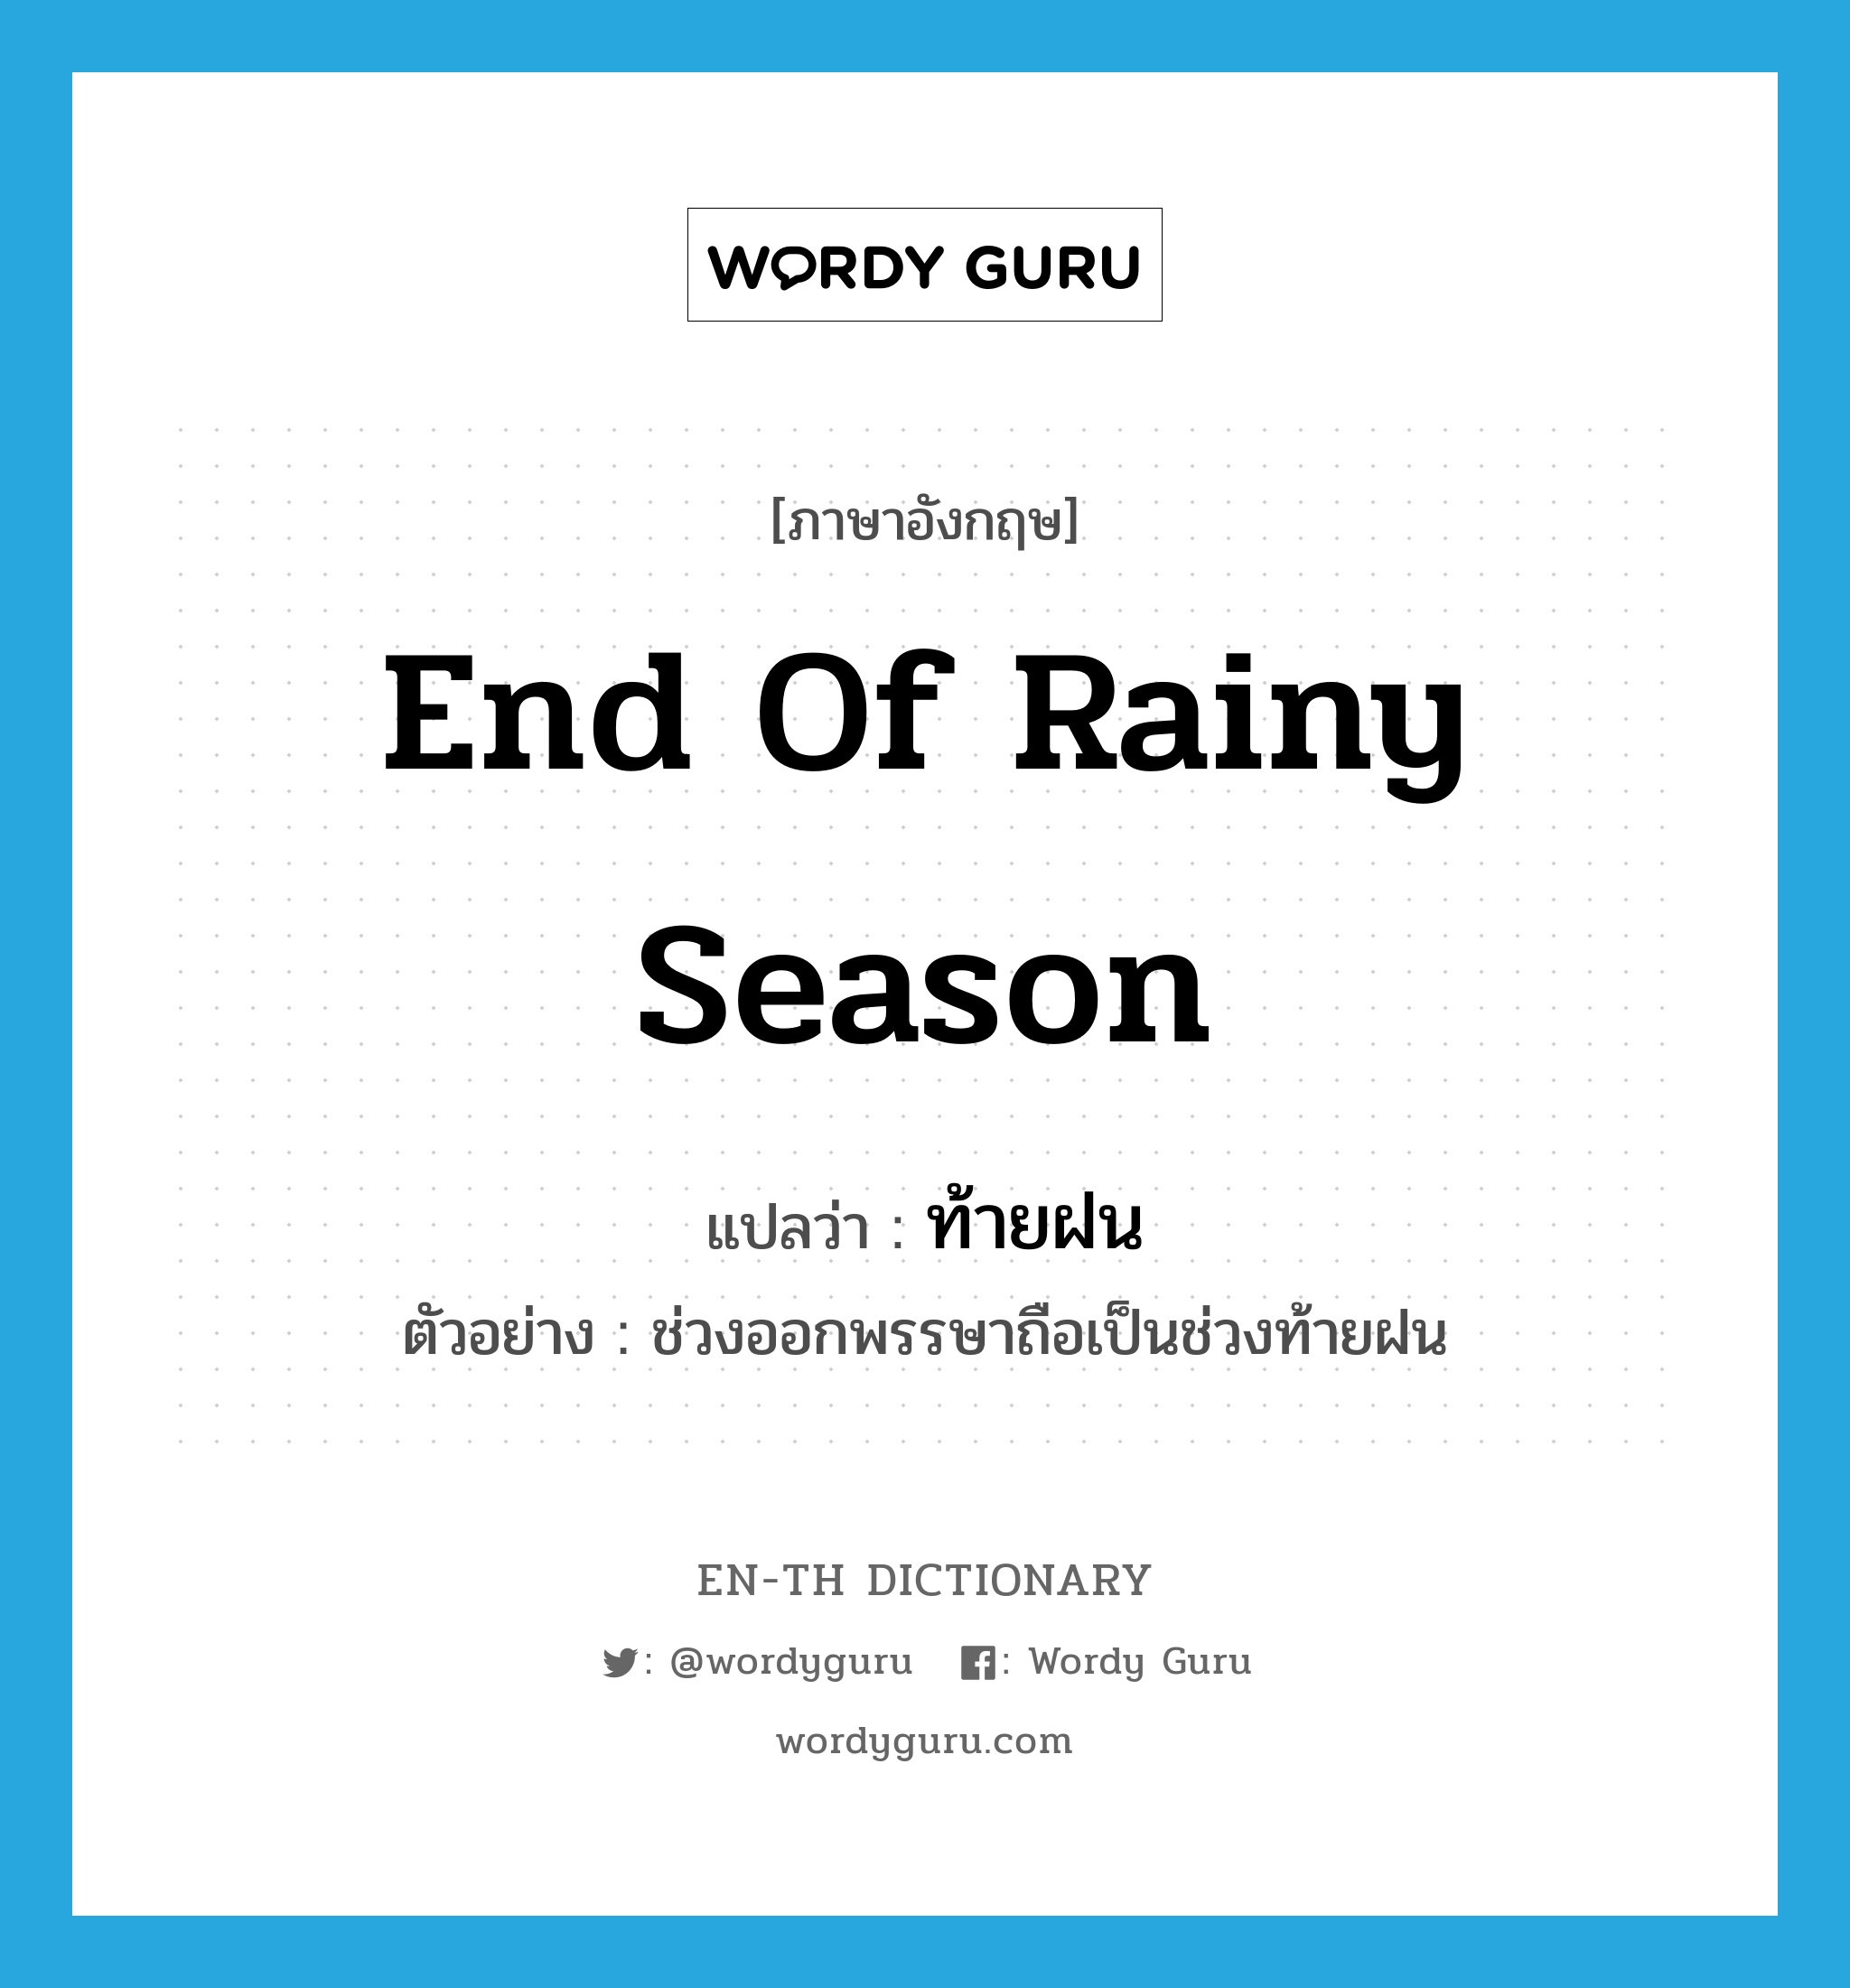 end of rainy season แปลว่า?, คำศัพท์ภาษาอังกฤษ end of rainy season แปลว่า ท้ายฝน ประเภท N ตัวอย่าง ช่วงออกพรรษาถือเป็นช่วงท้ายฝน หมวด N